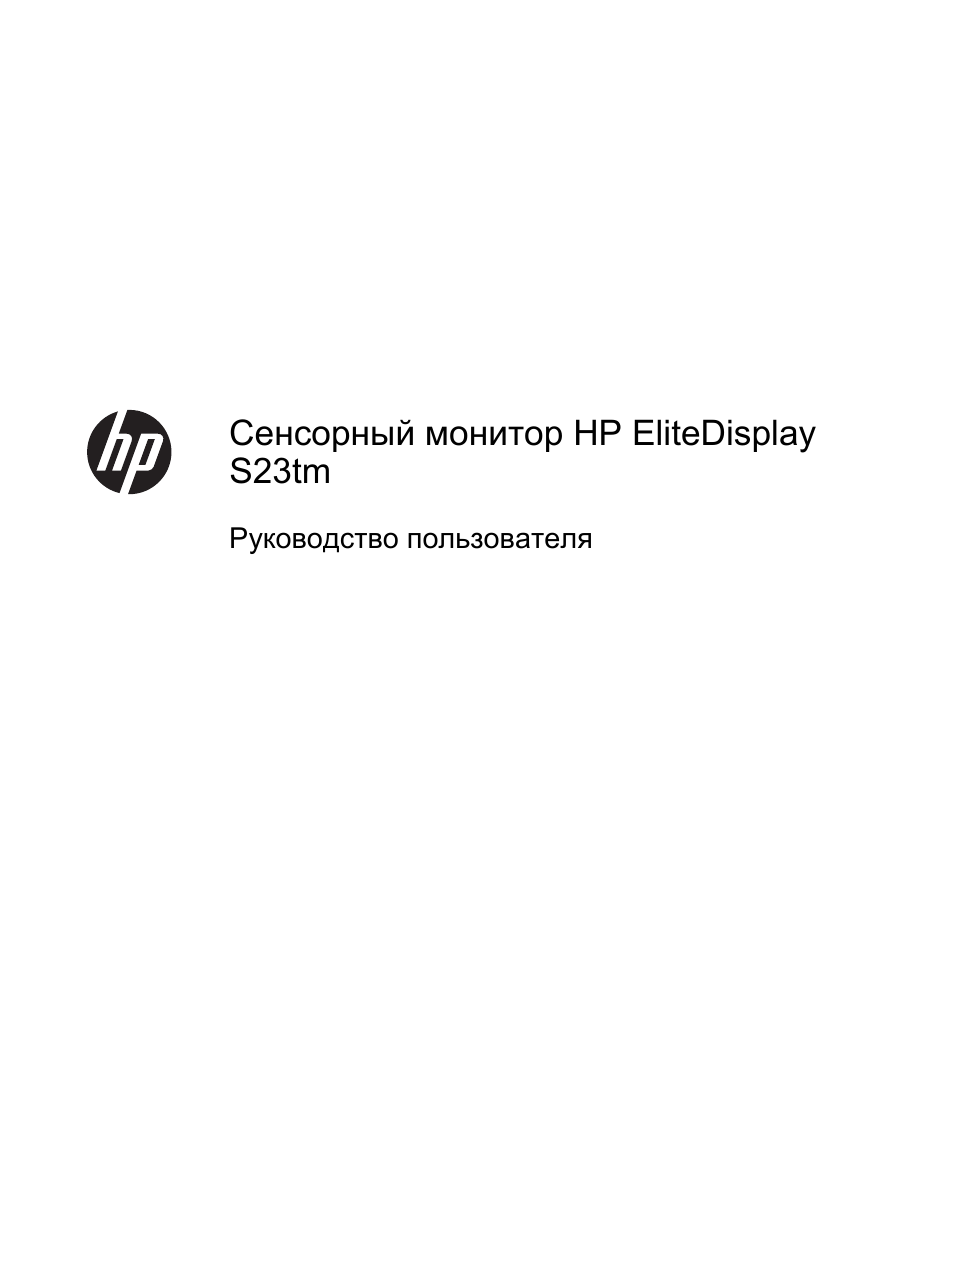 Инструкция по эксплуатации HP Сенсорный монитор HP EliteDisplay S230tm 23 inch | 31 cтраница